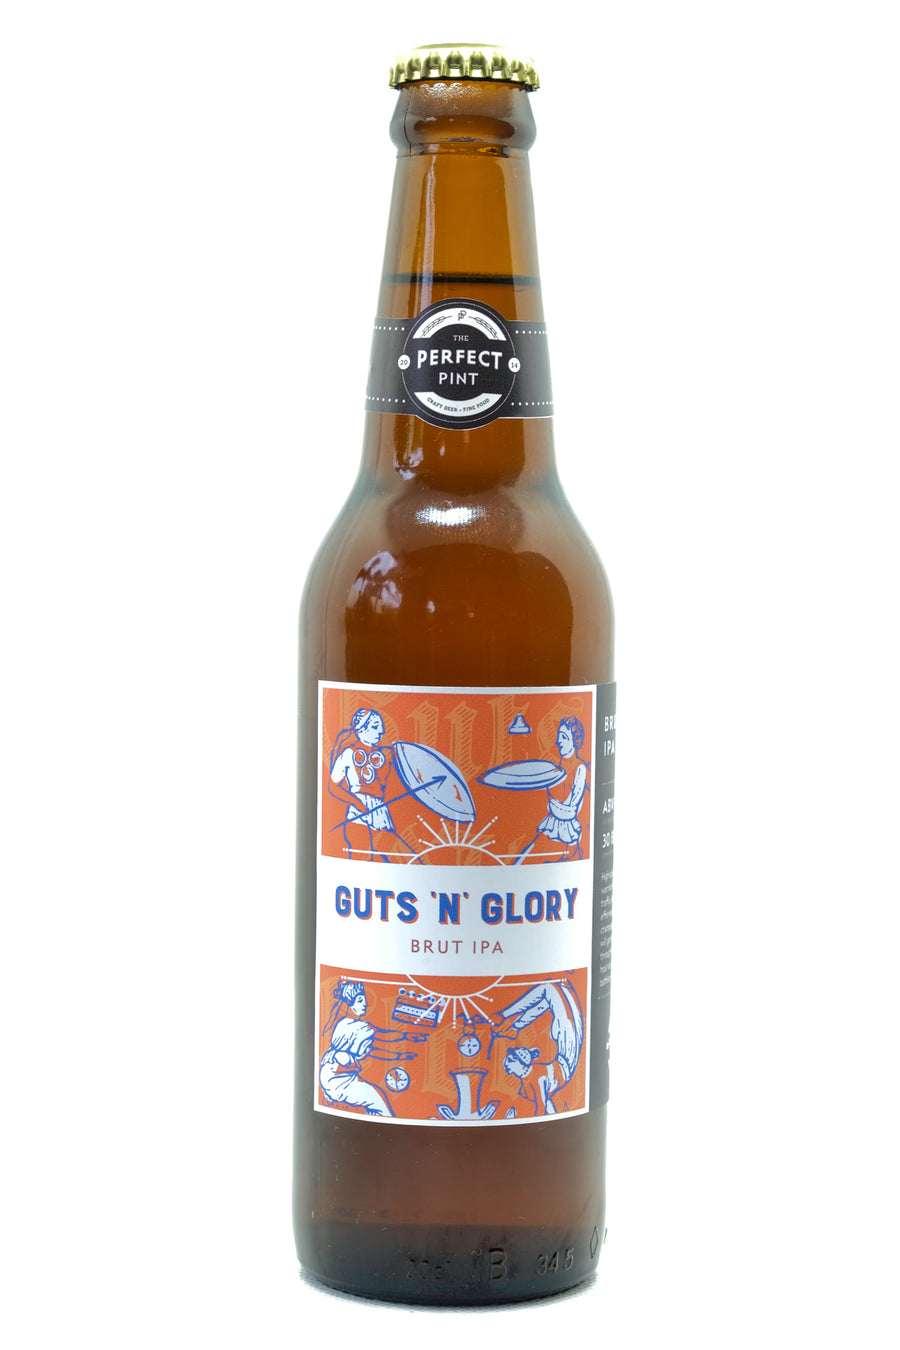 Guts 'N' Glory Brut IPA (ABV 5.4%, 30 IBU)